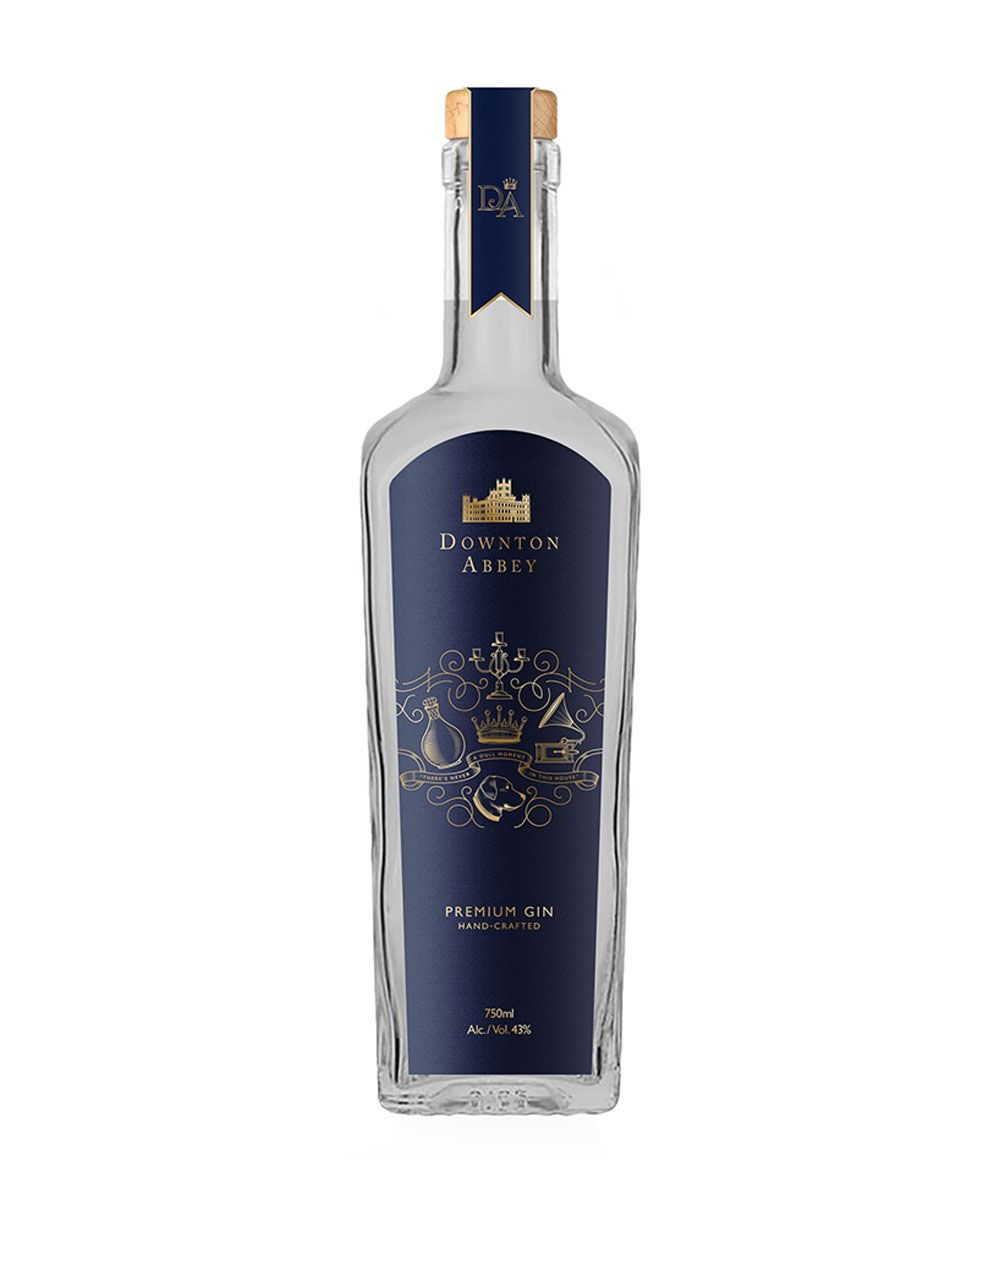 Downton Abbey Premium English Gin